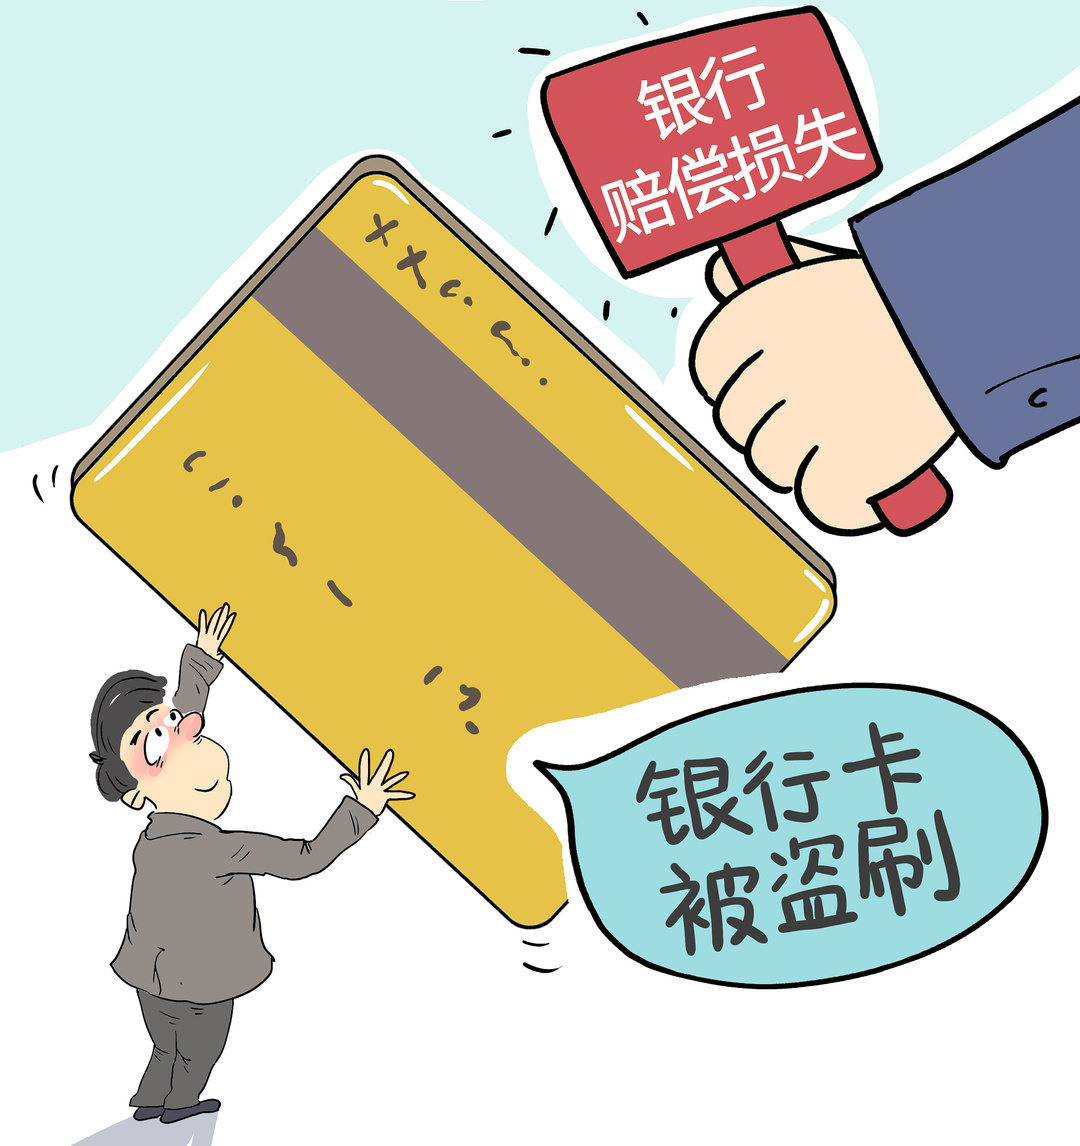 银行卡被盗刷可索赔 最高法新规“上保险”凤凰网甘肃_凤凰网